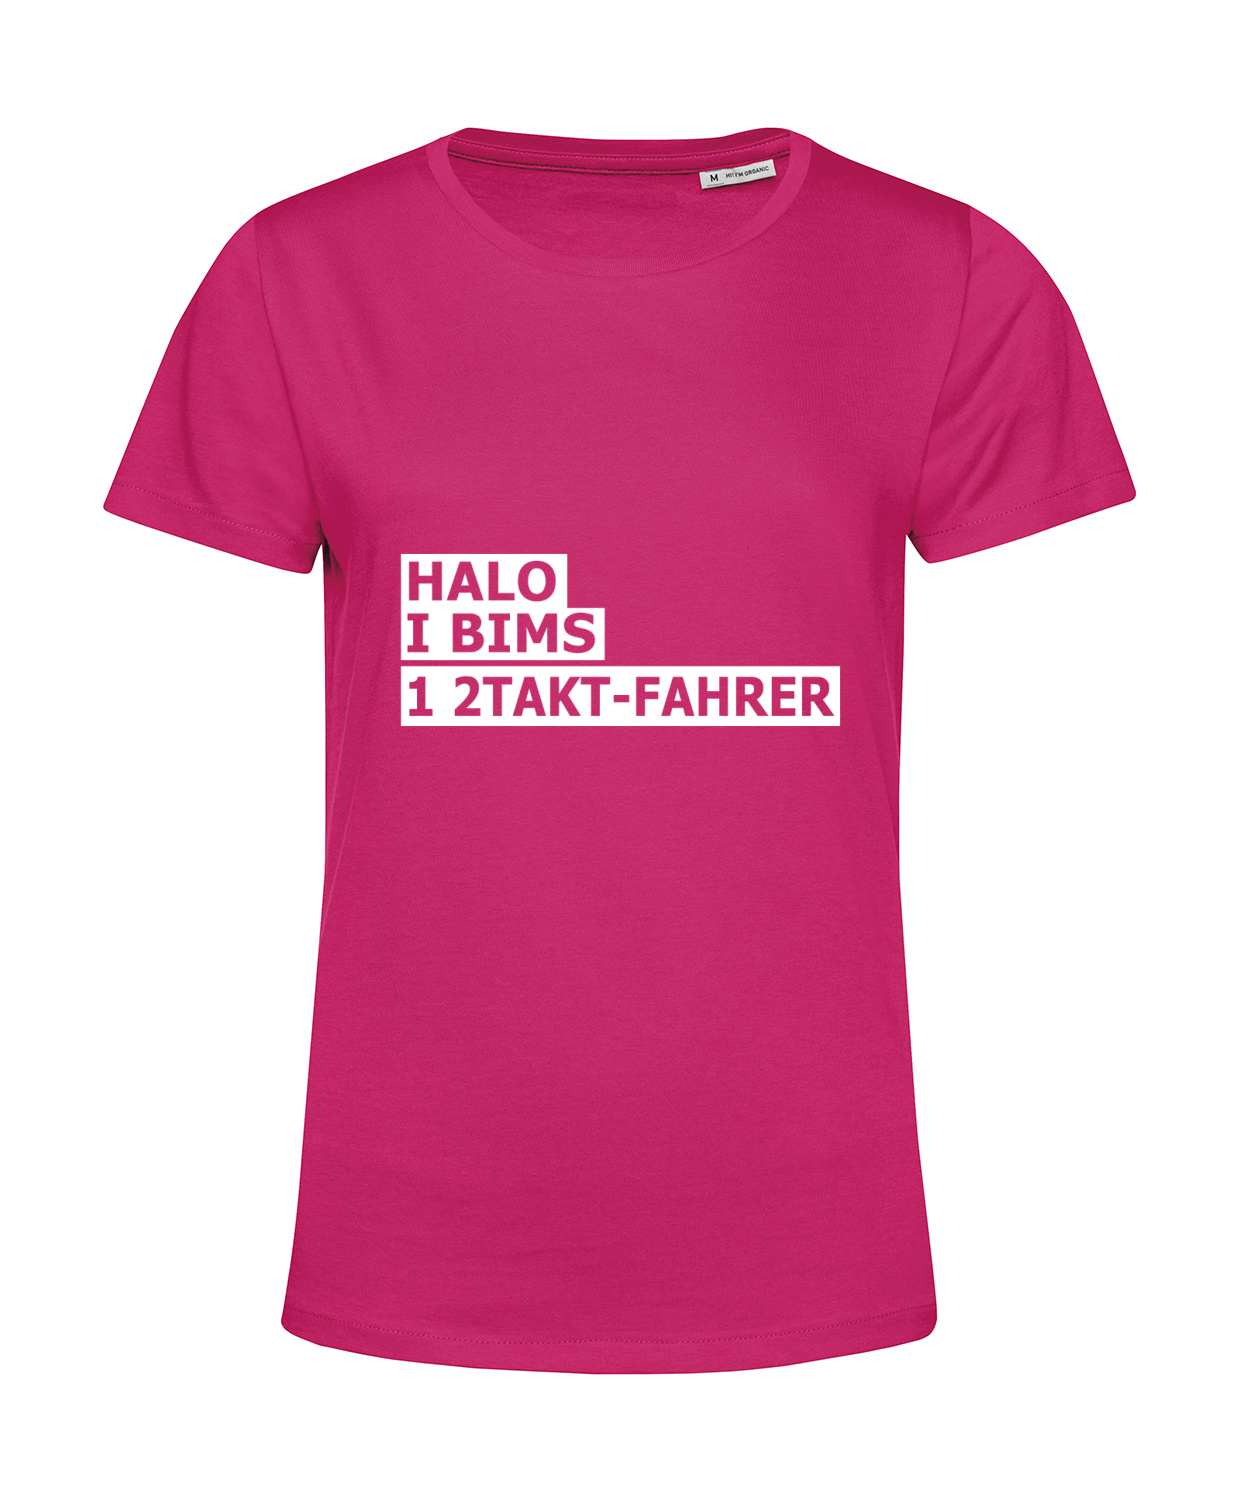 Nachhaltiges T-Shirt Damen 2Takter - Halo I bims 1 2Takt-Fahrer